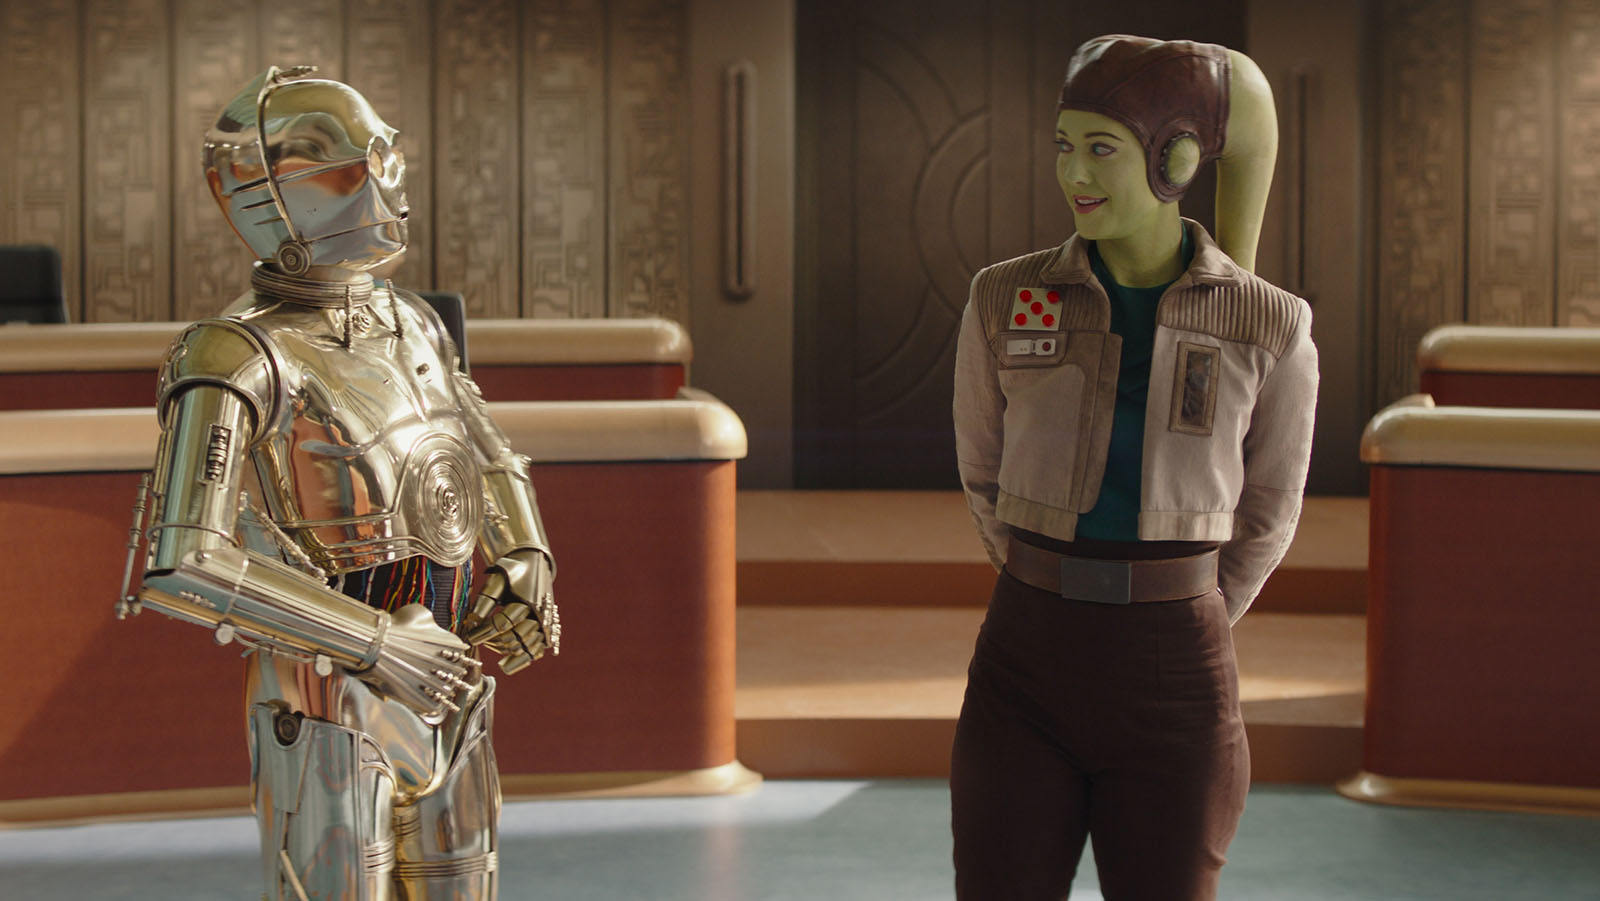 Some familiar faces, like C-3PO, return for cameos in Ahsoka.